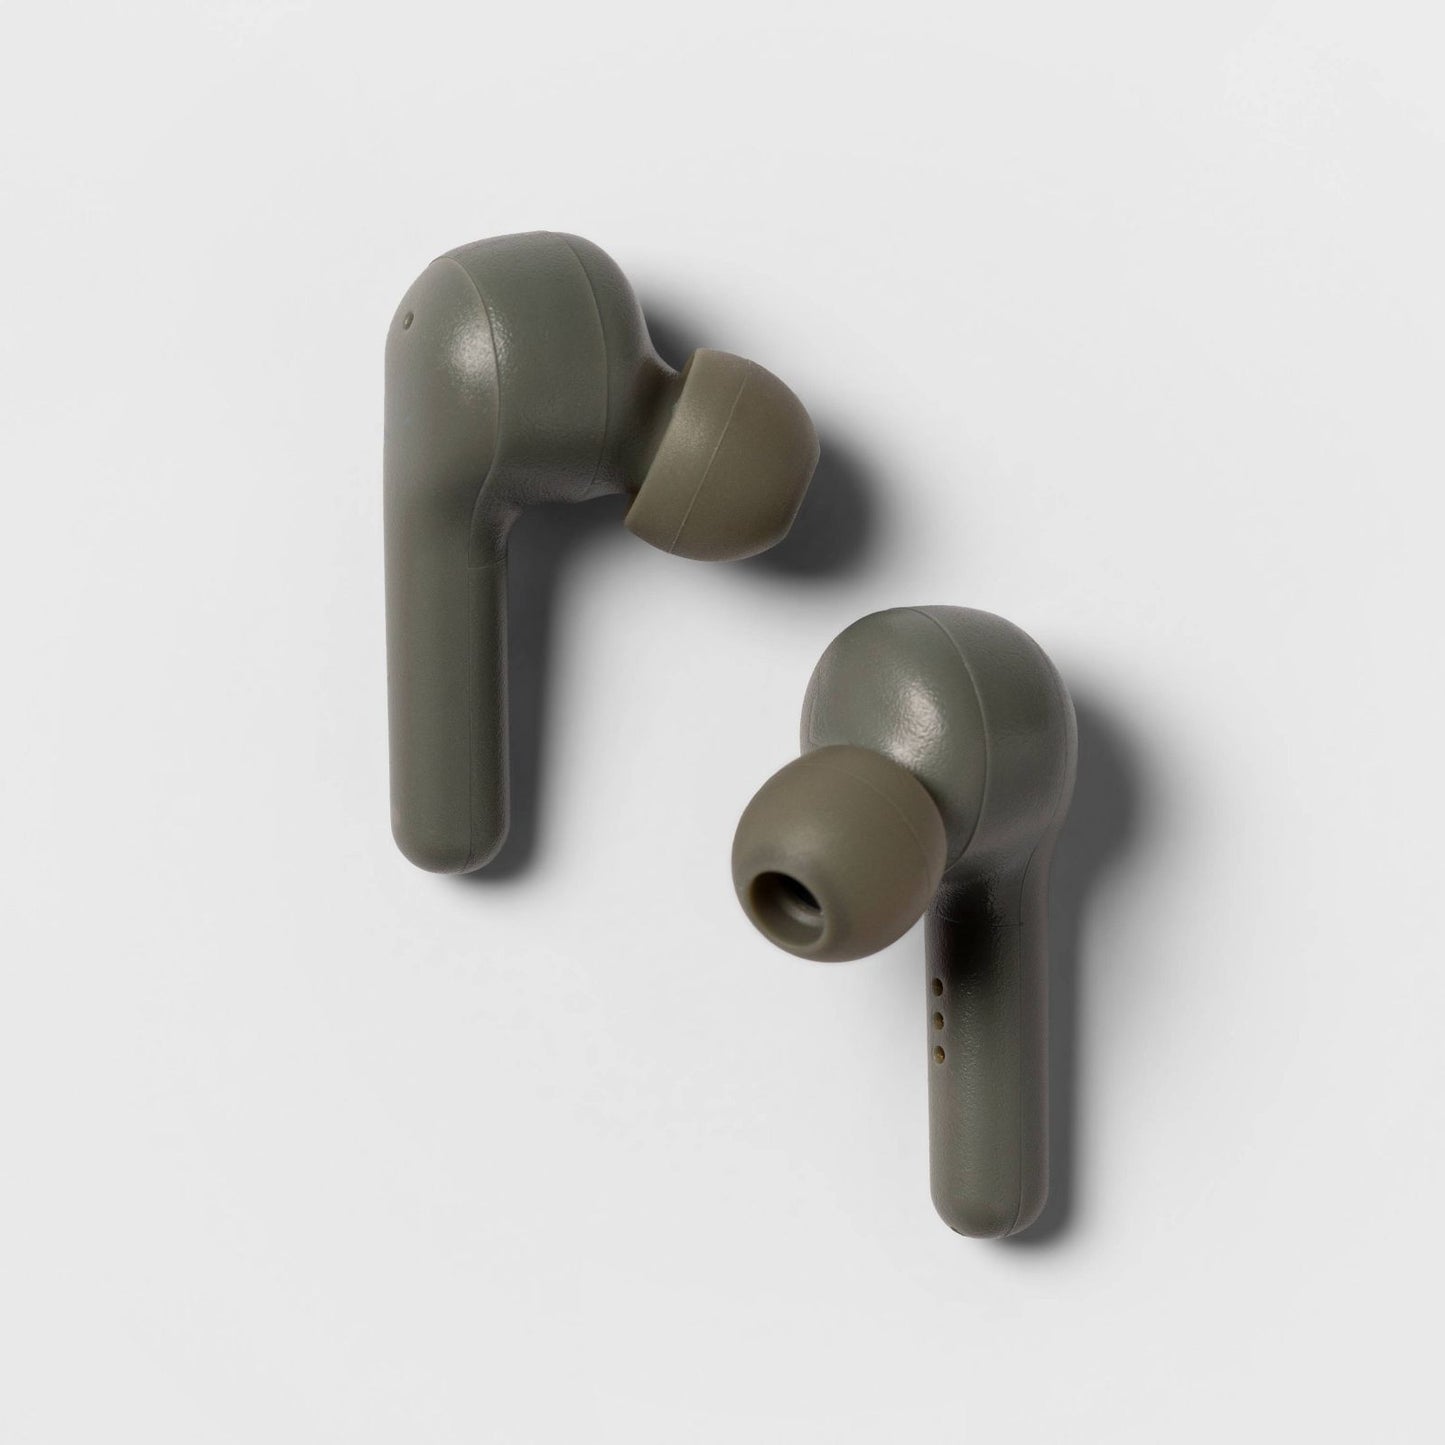 HeyDay Wireless Earbuds Headphones Gray Color